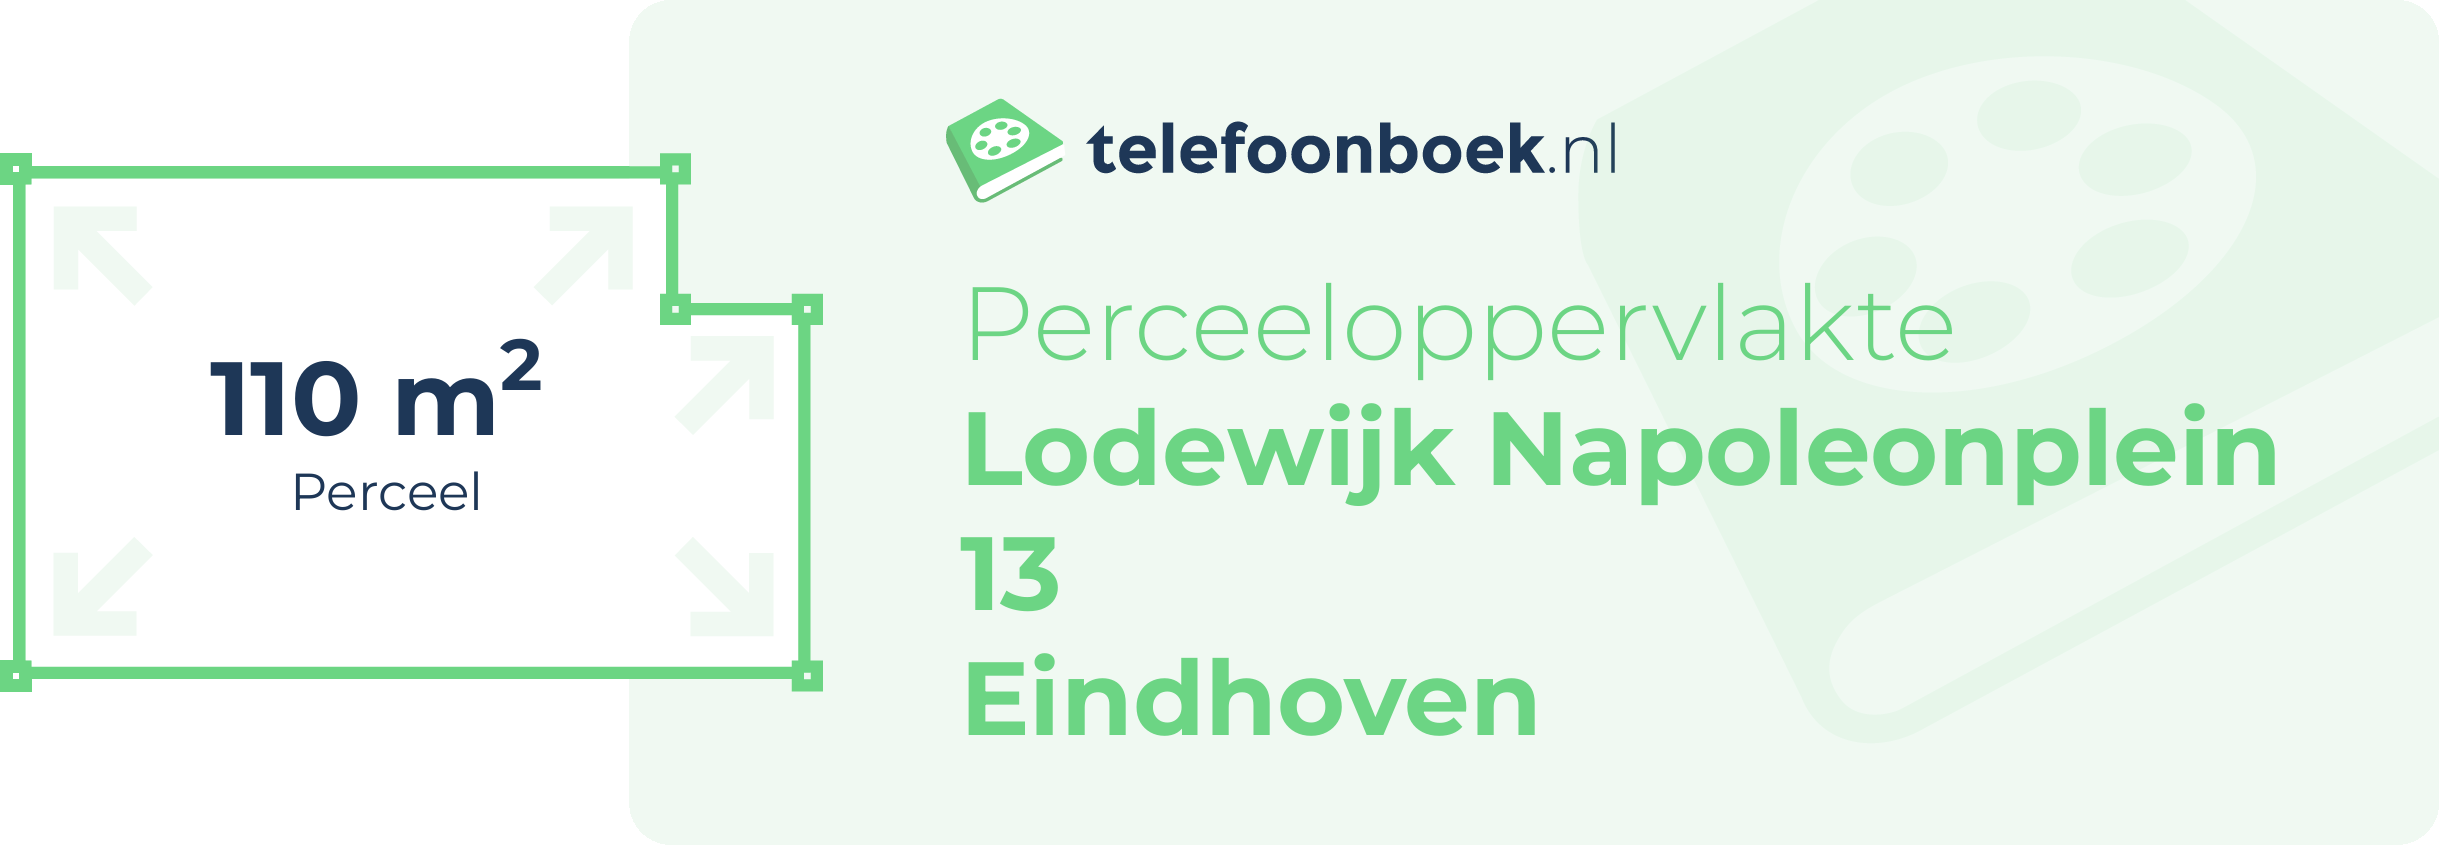 Perceeloppervlakte Lodewijk Napoleonplein 13 Eindhoven